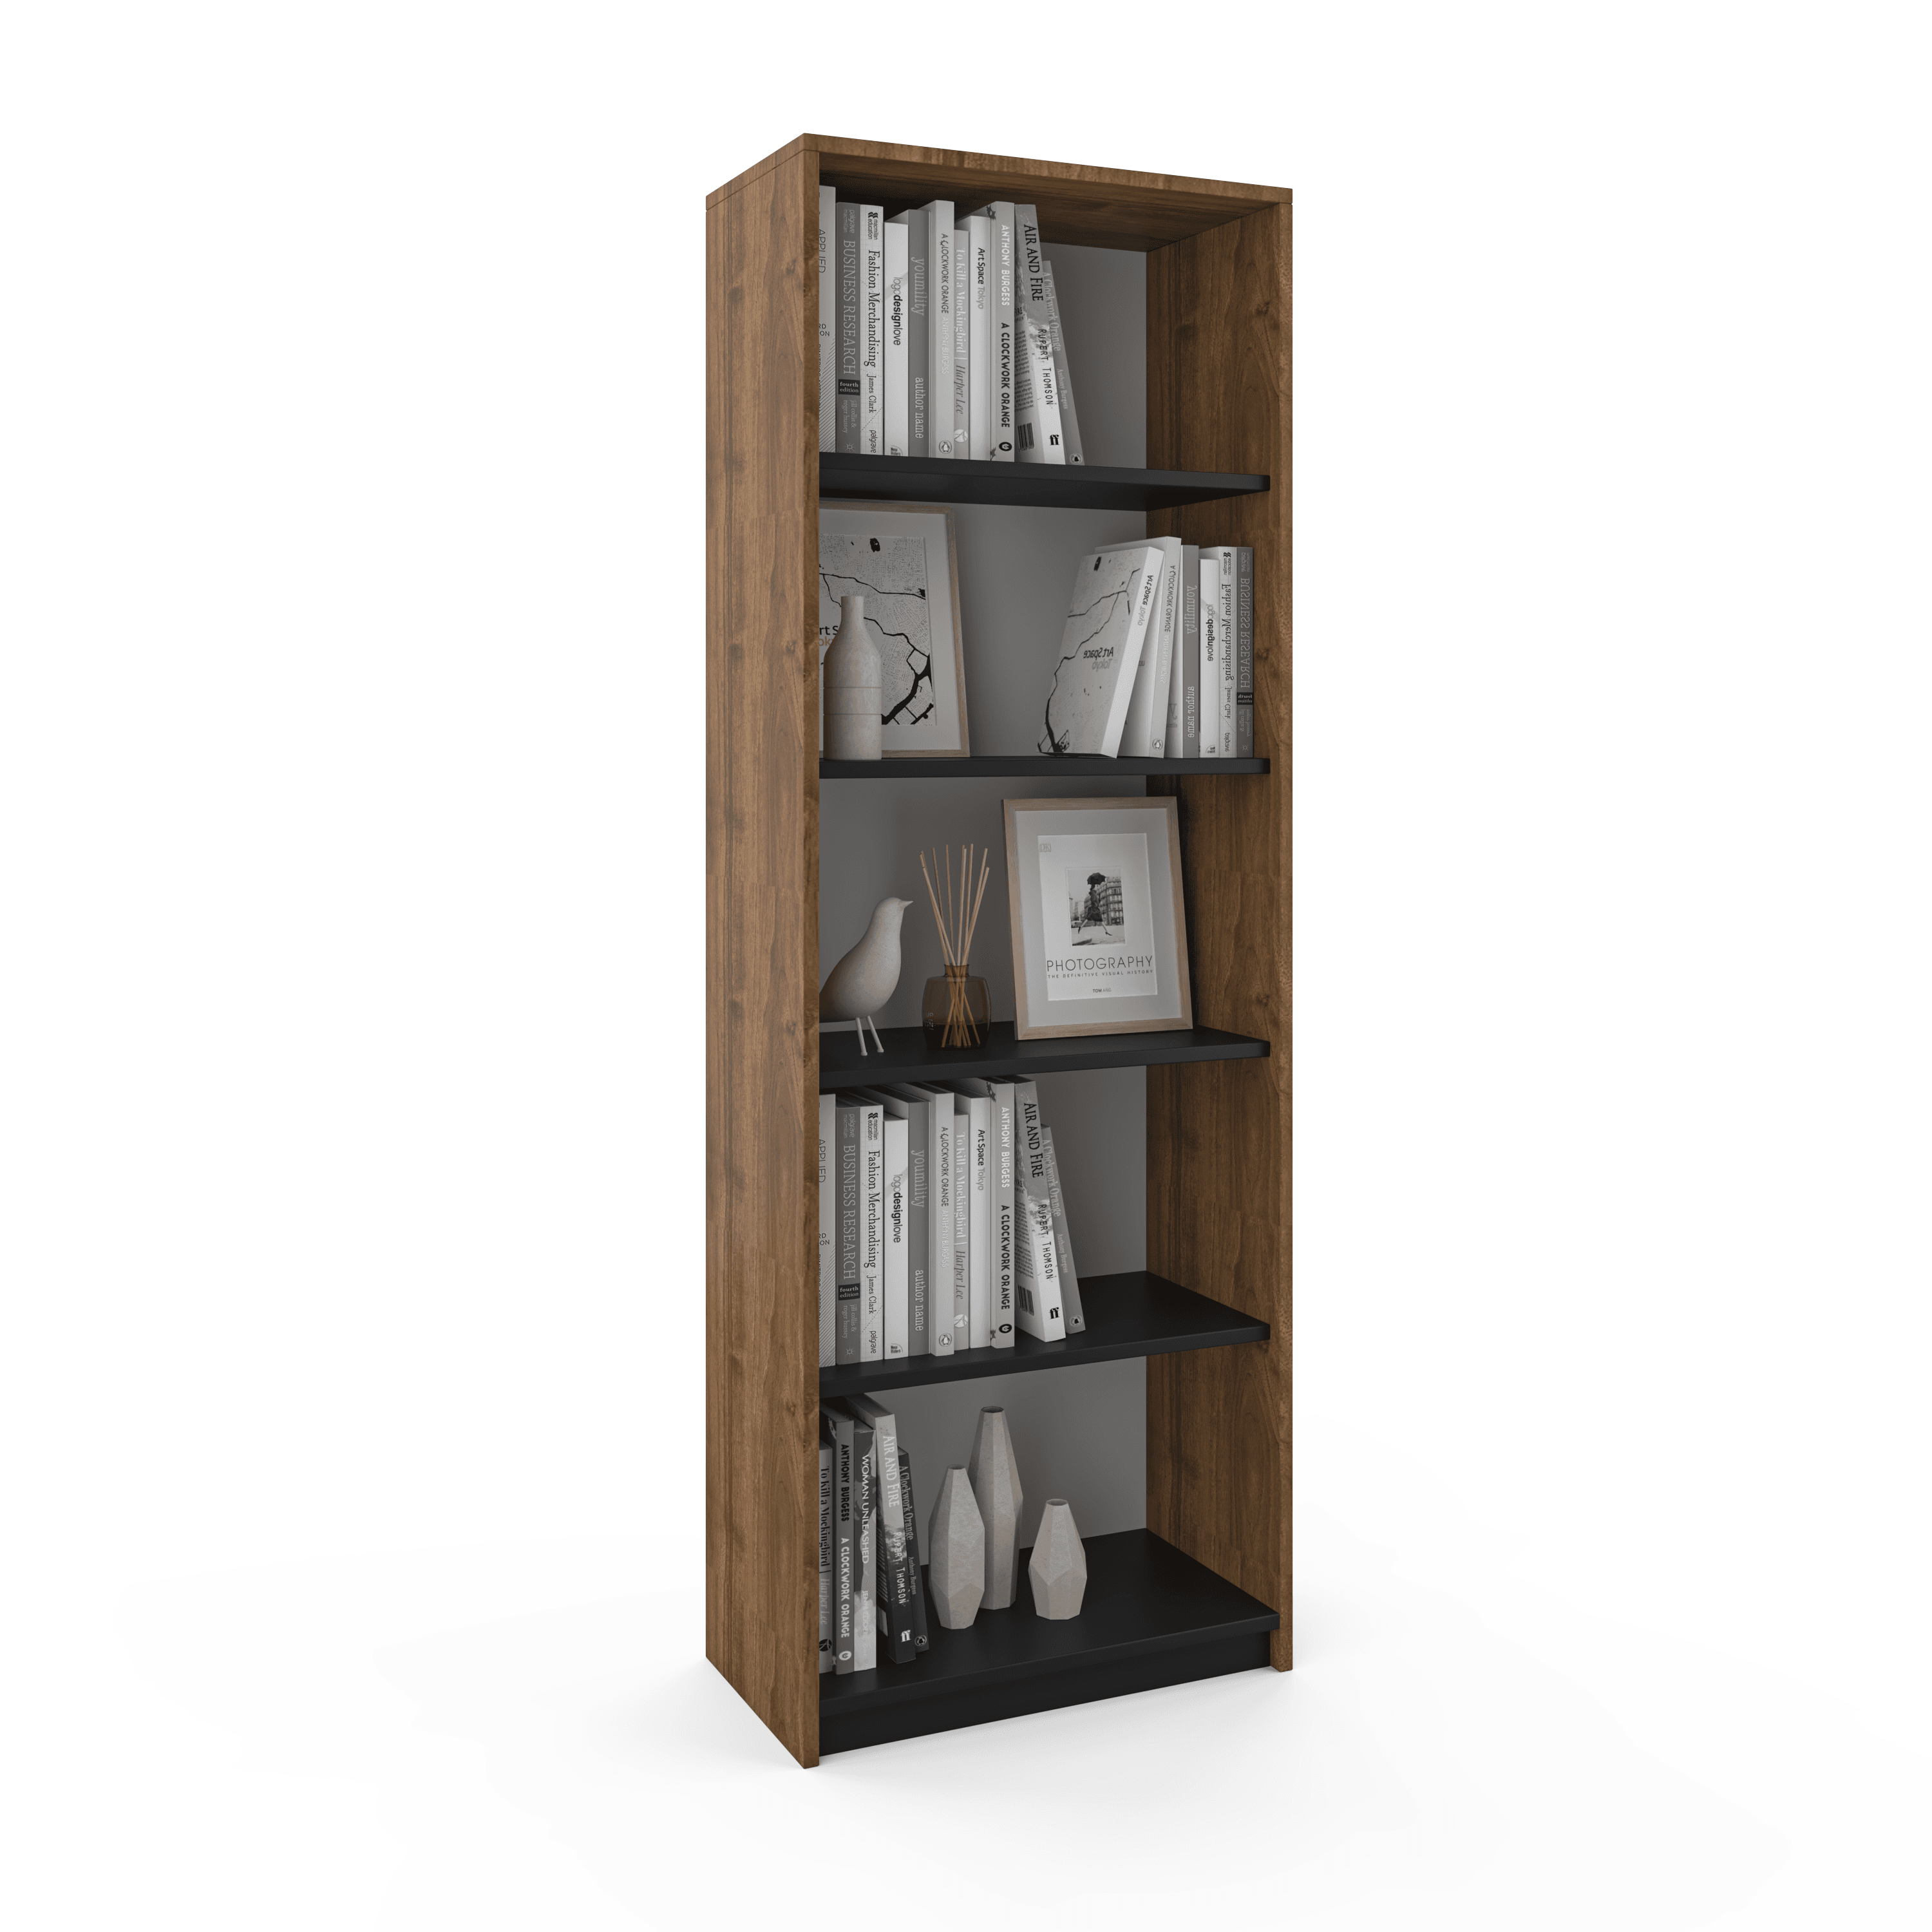 Vera Bookshelf - Walnut Color - Black